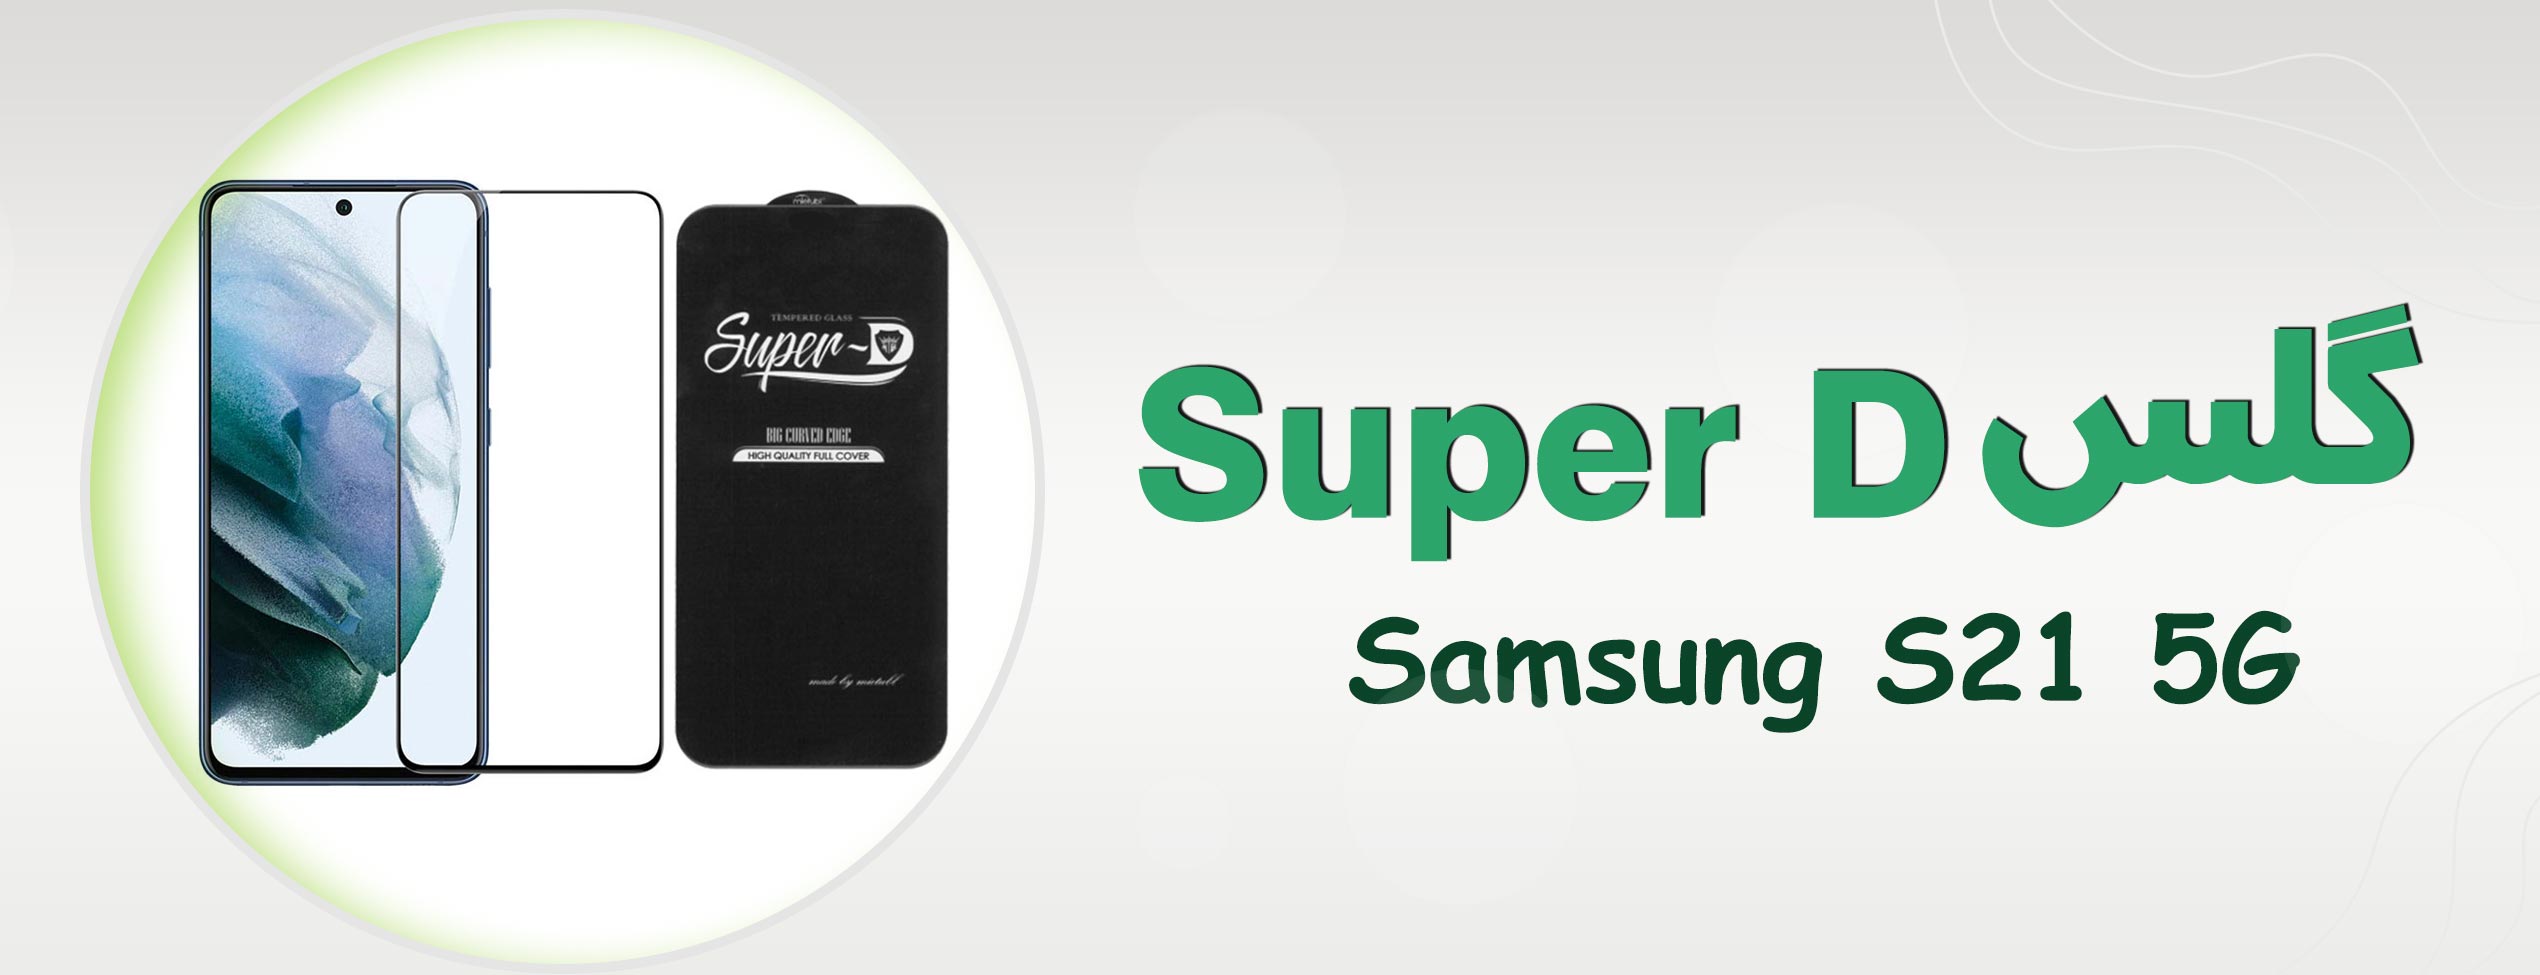 گلس Super D گوشی سامسونگ Samsung S21 5G